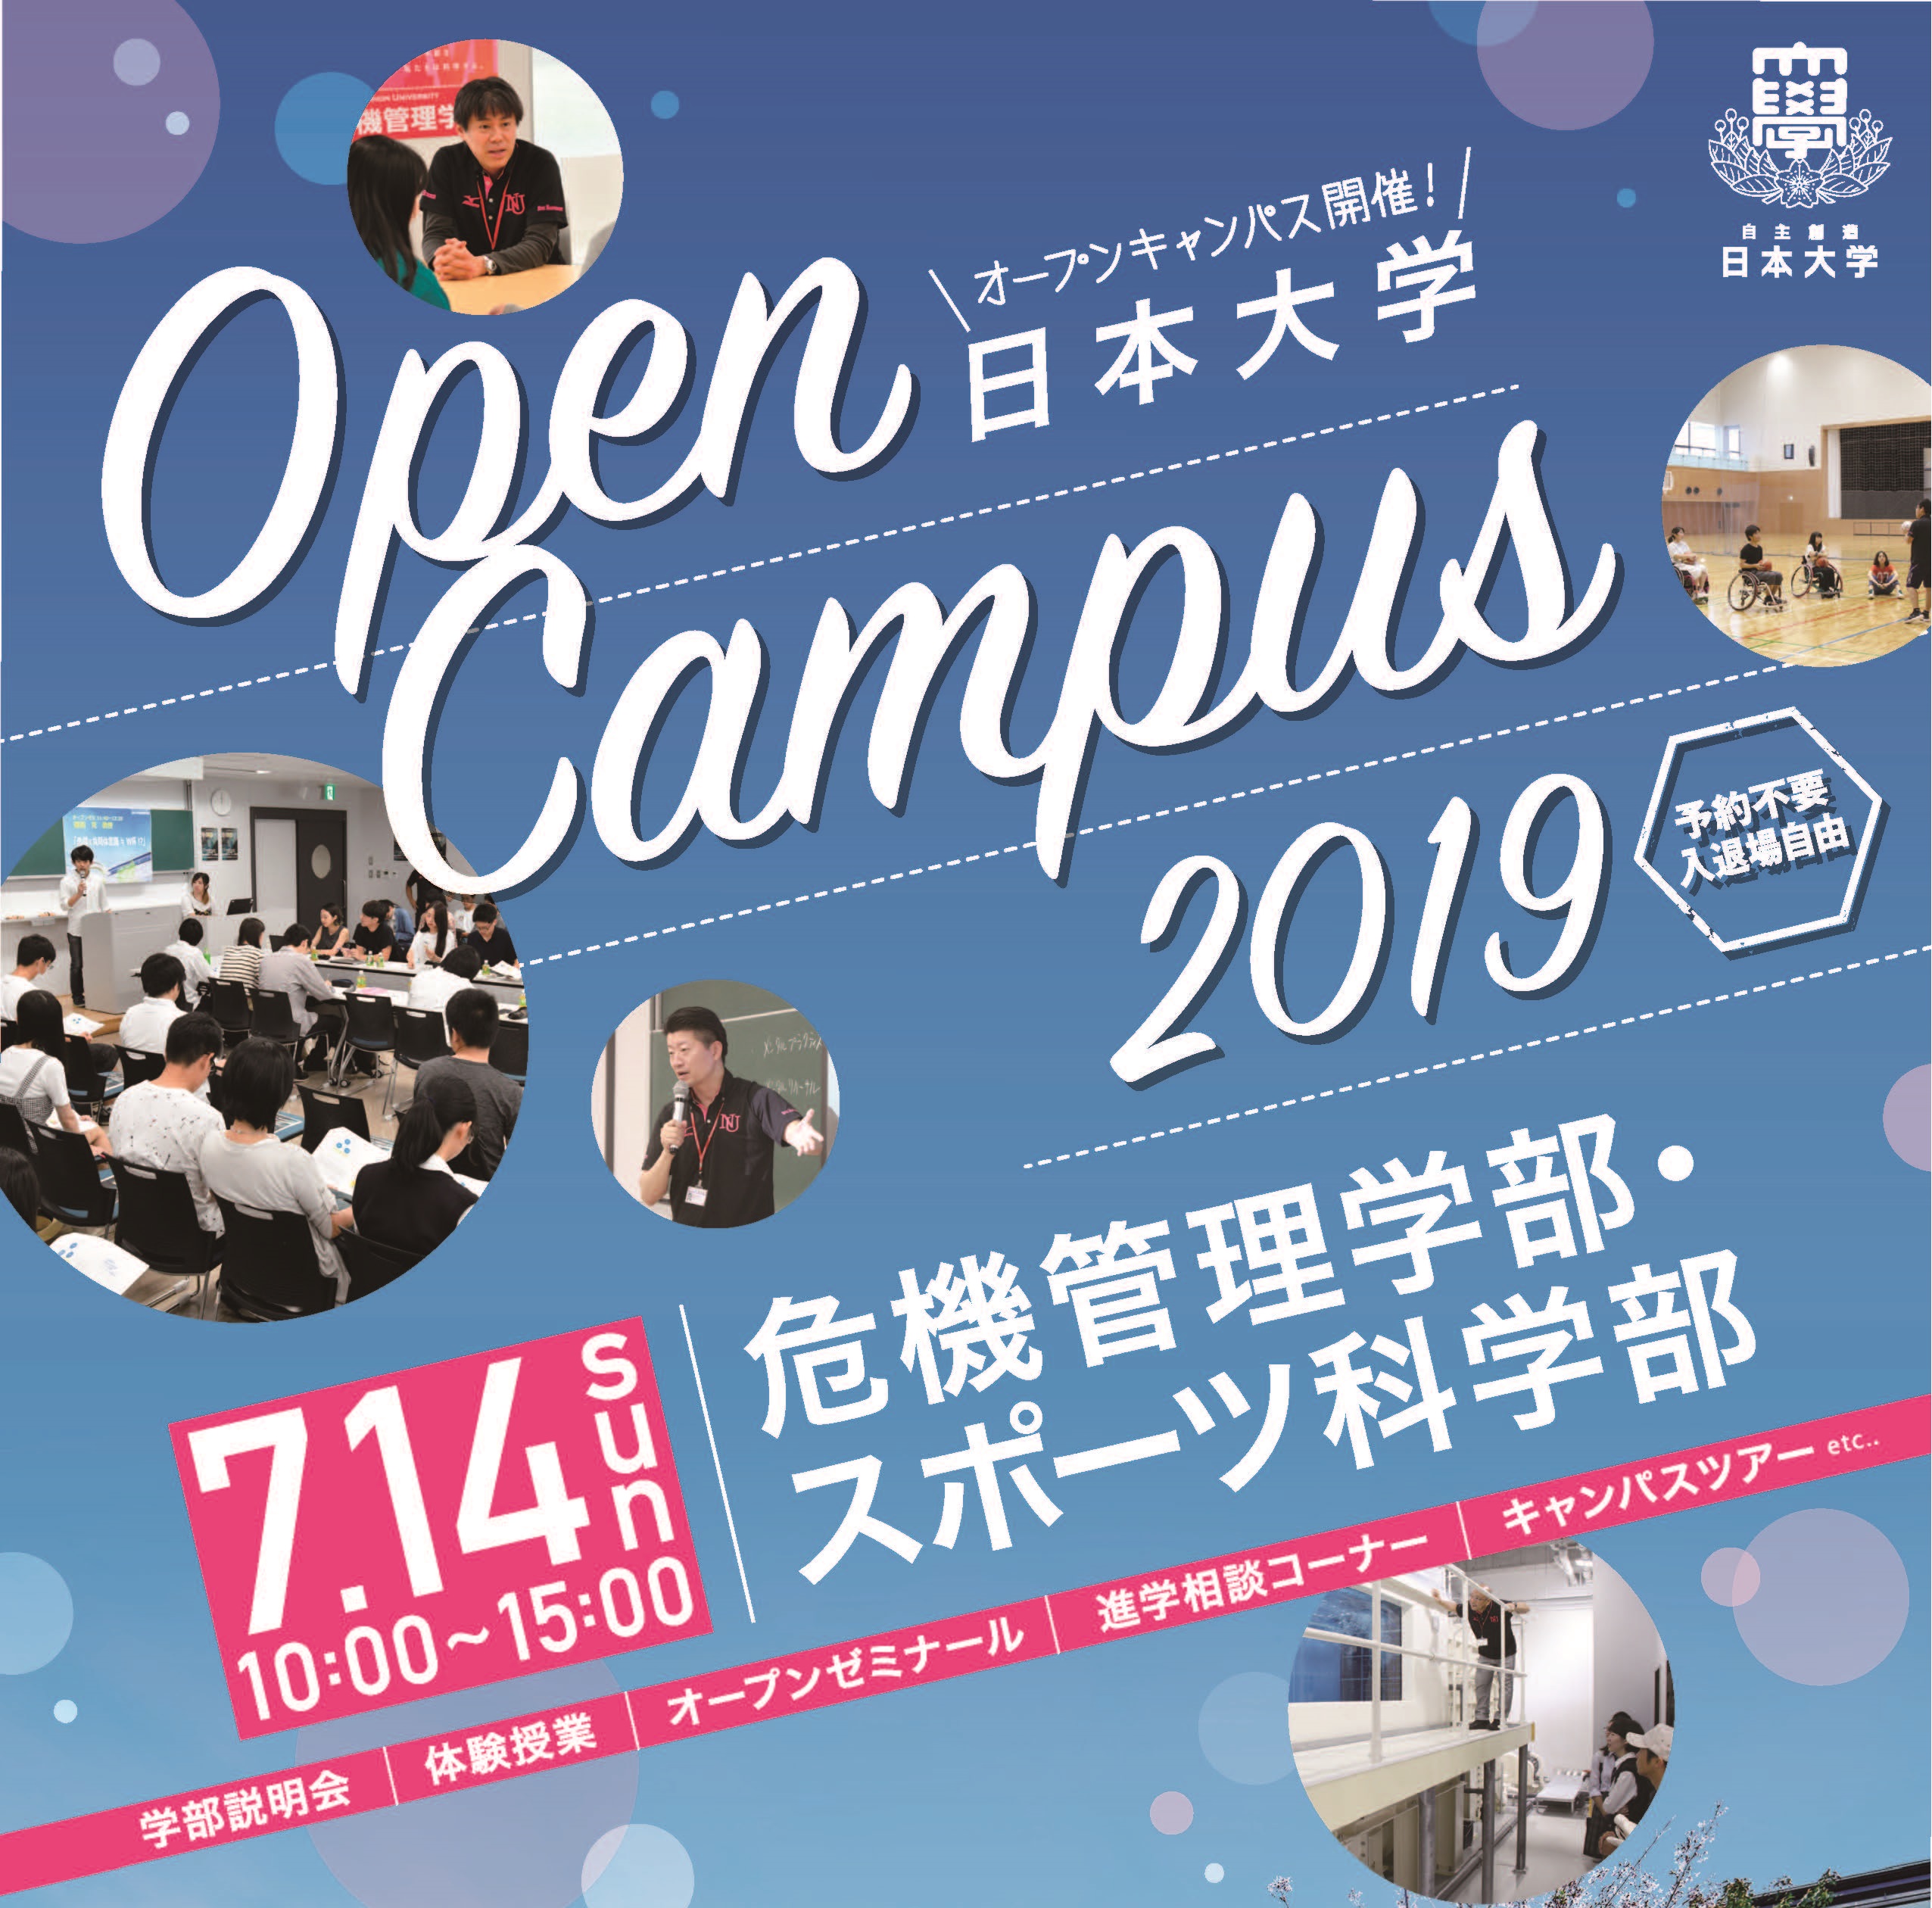 7月14日（日）オープンキャンパスを開催します！